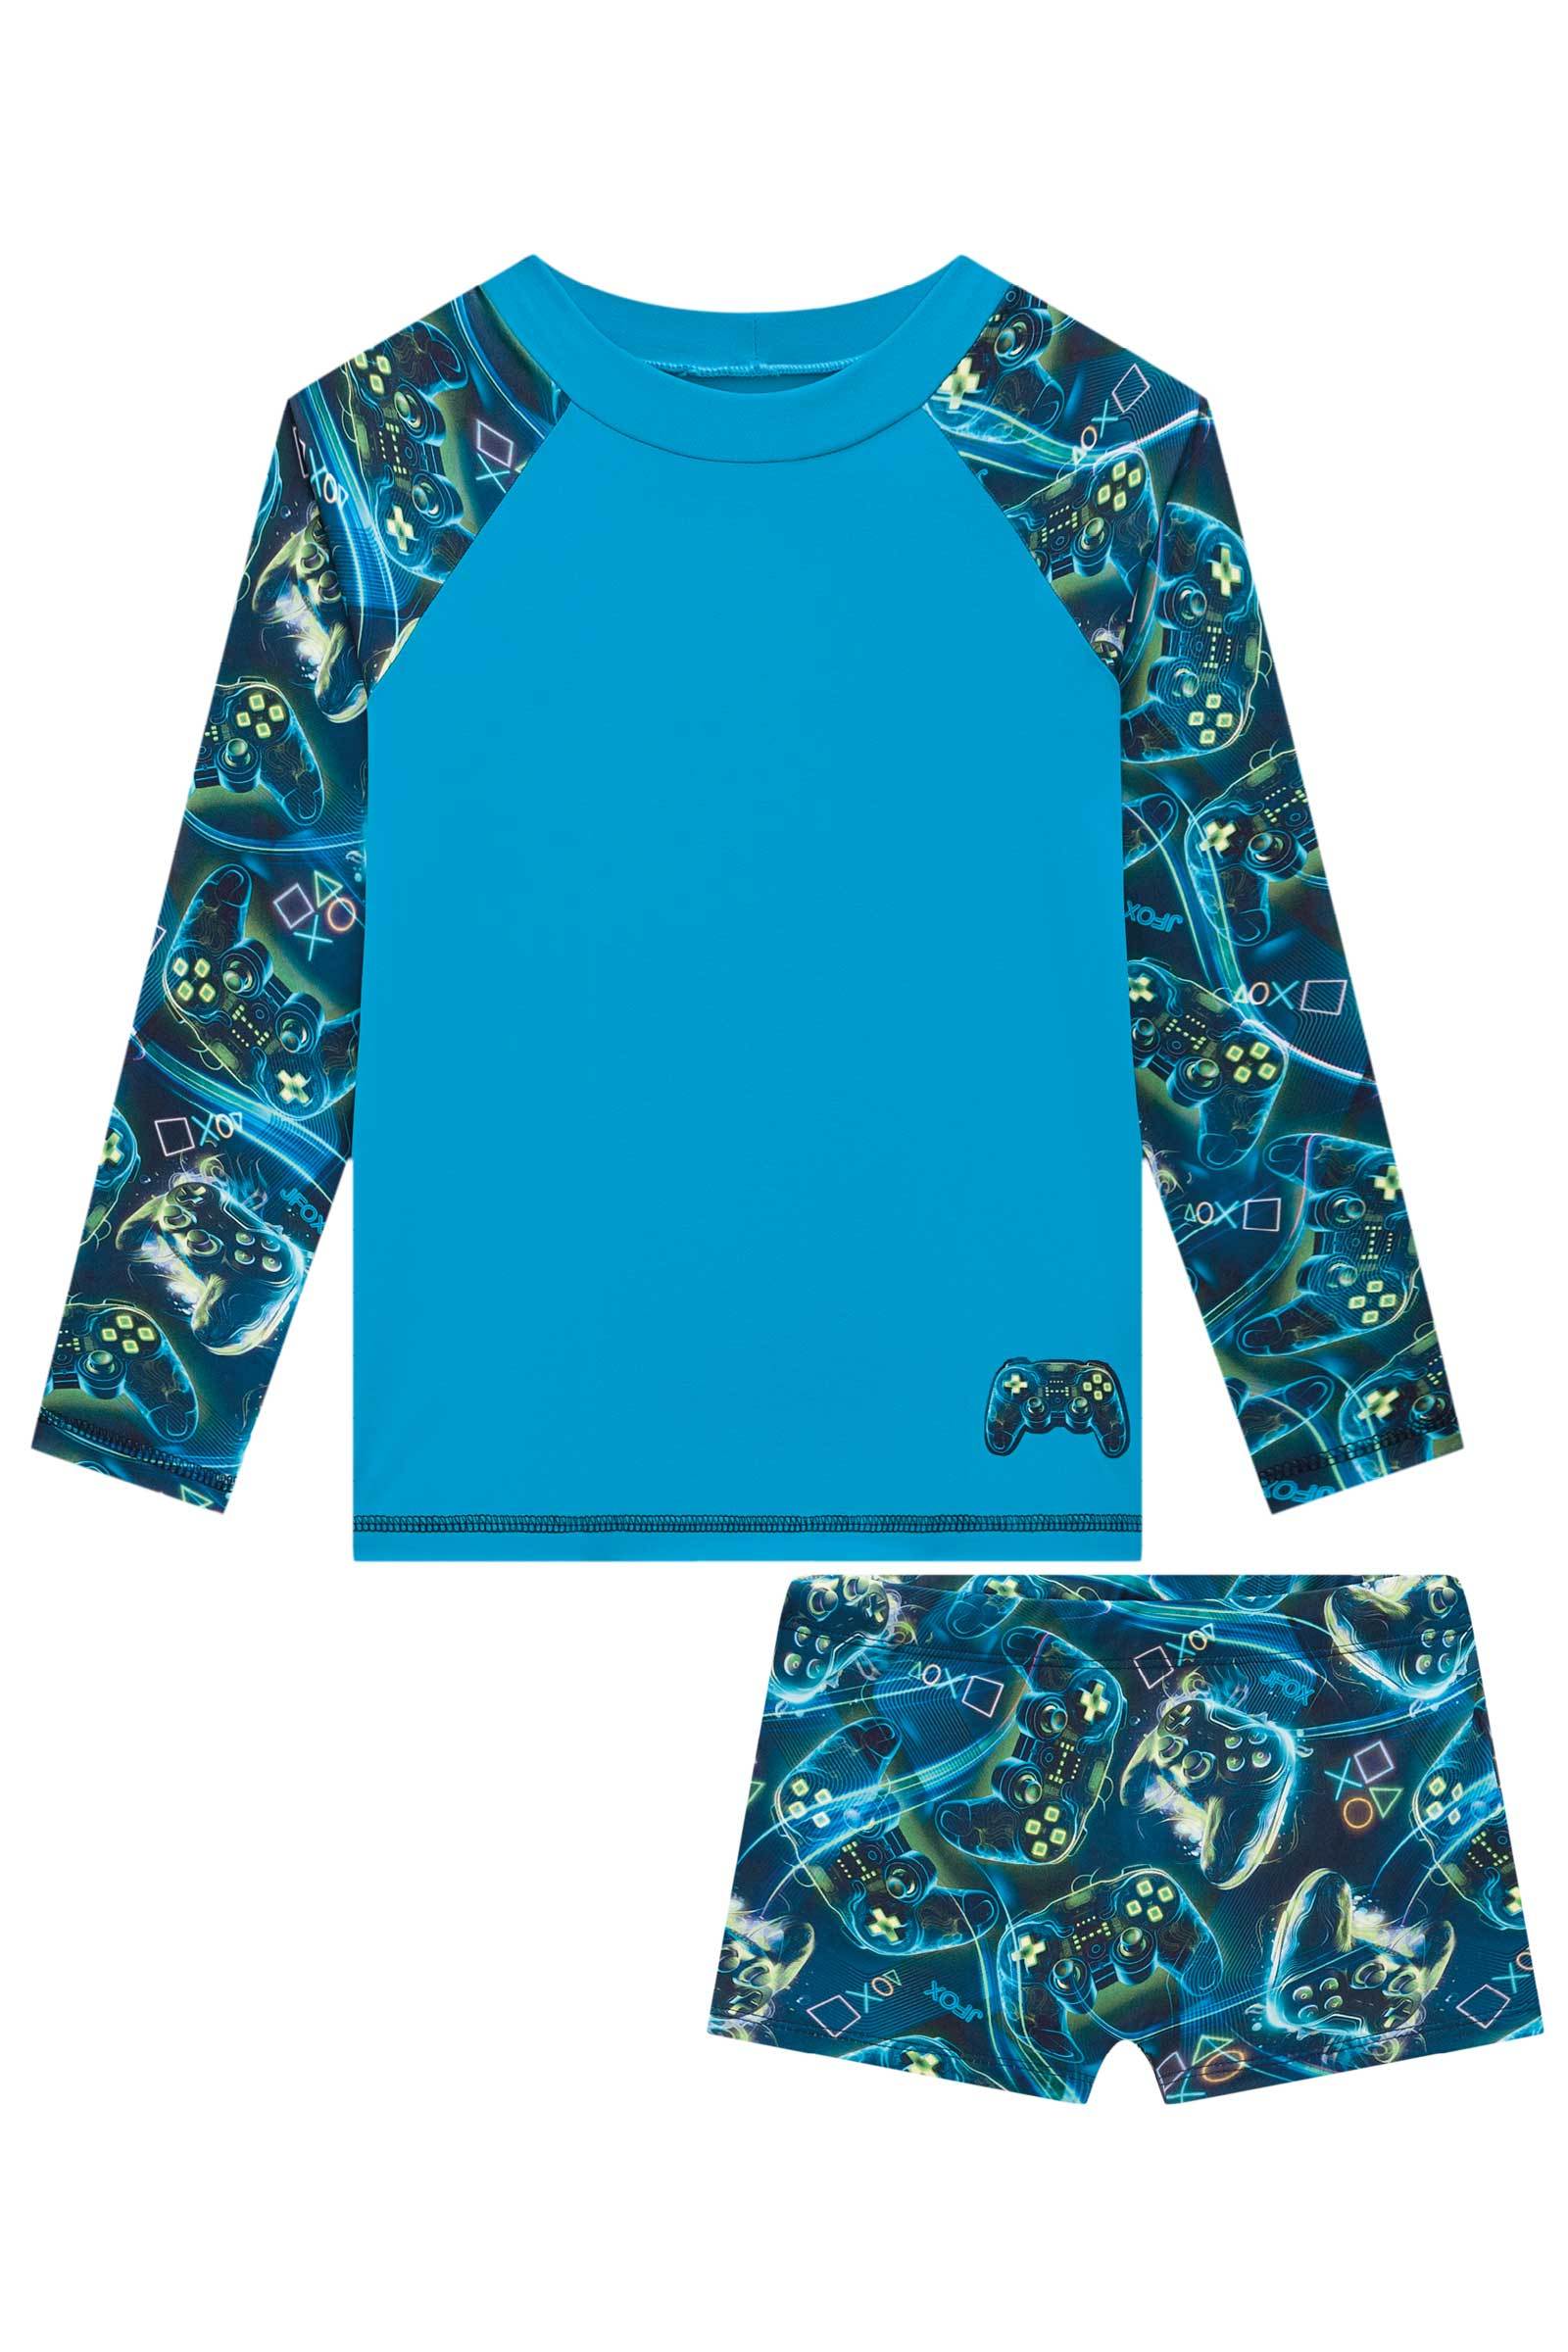 Conjunto de Camiseta e Sunga em Malha Uv Dry com Proteção Uv 50+ 73988 Johnny Fox